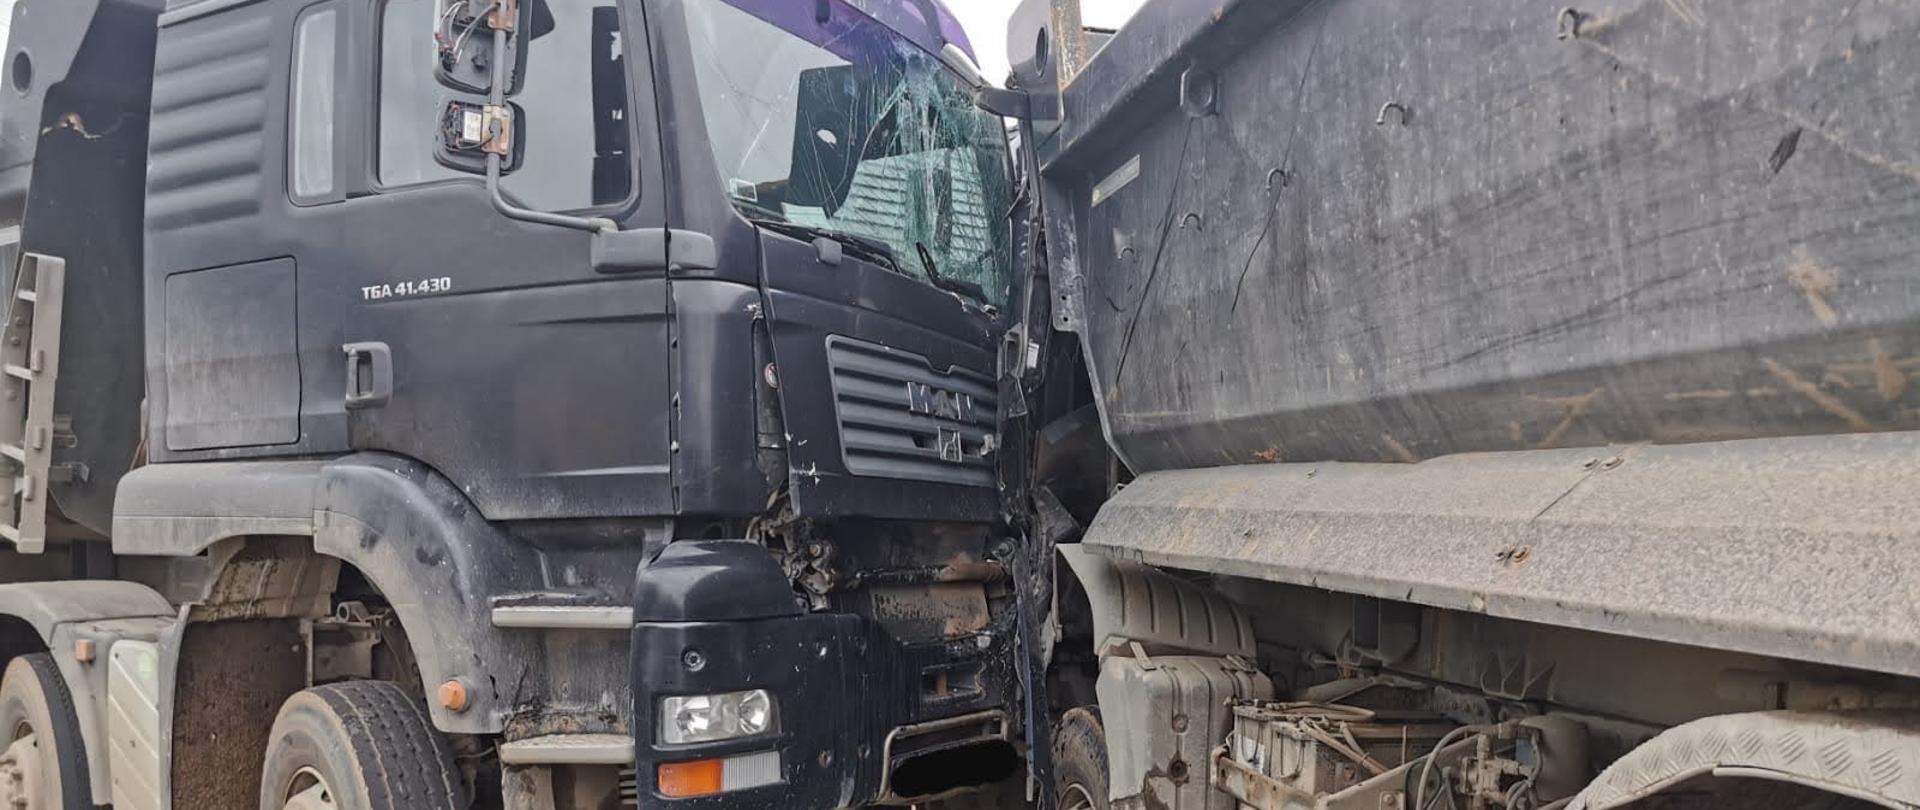 Widok uszkodzonych ciężarówek